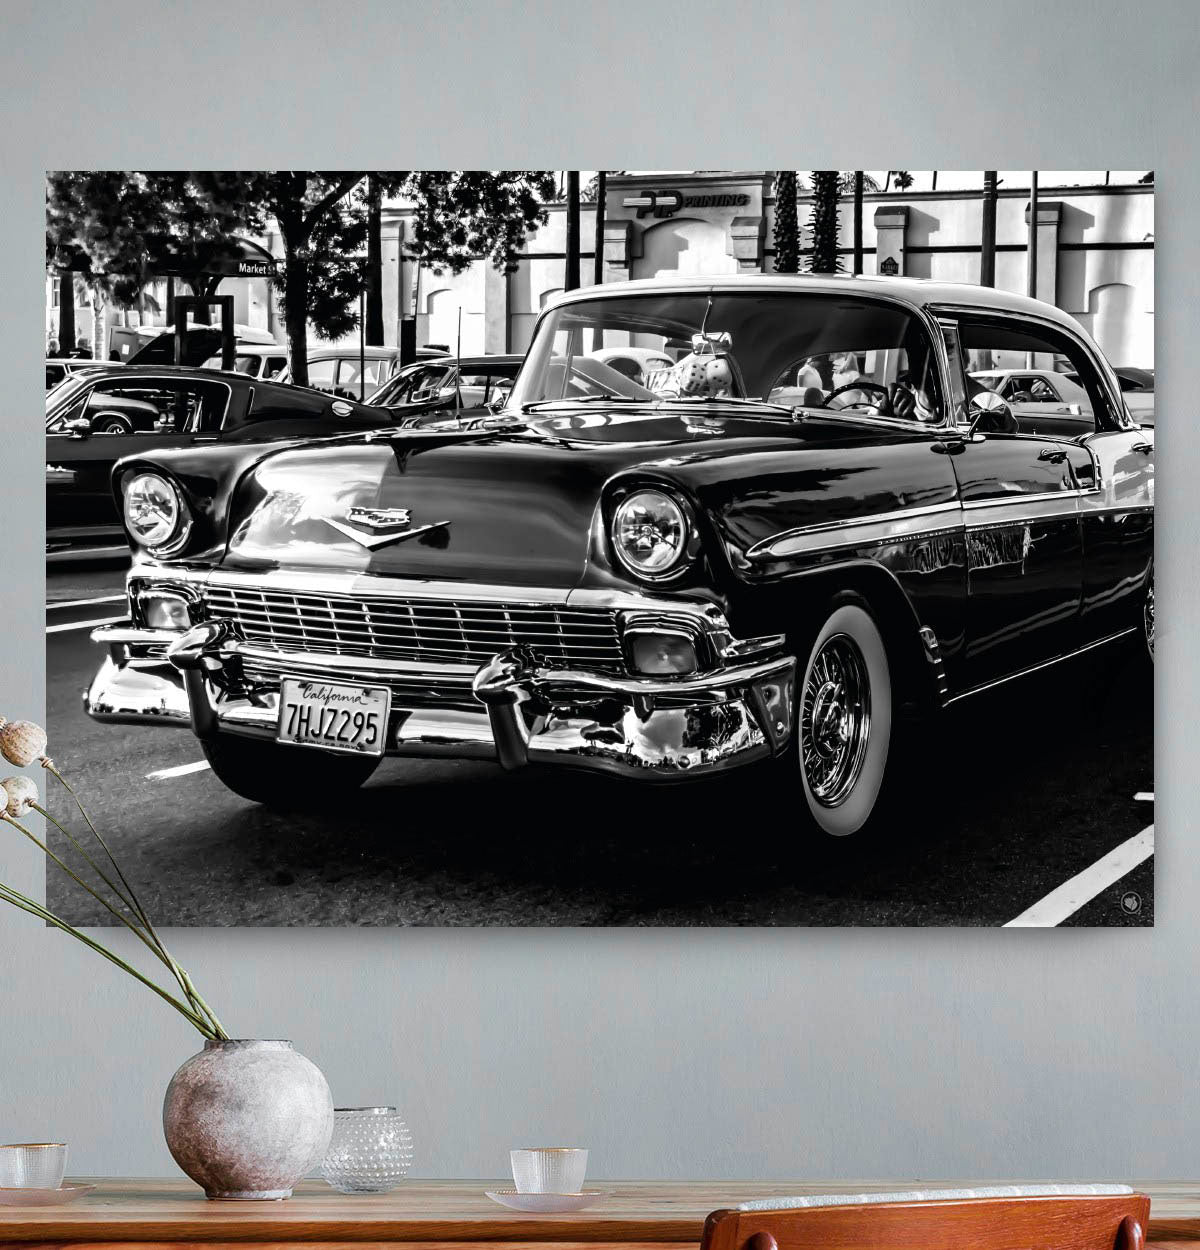 Vierkante wanddecoratie van een luxe auto in zwart-wit.